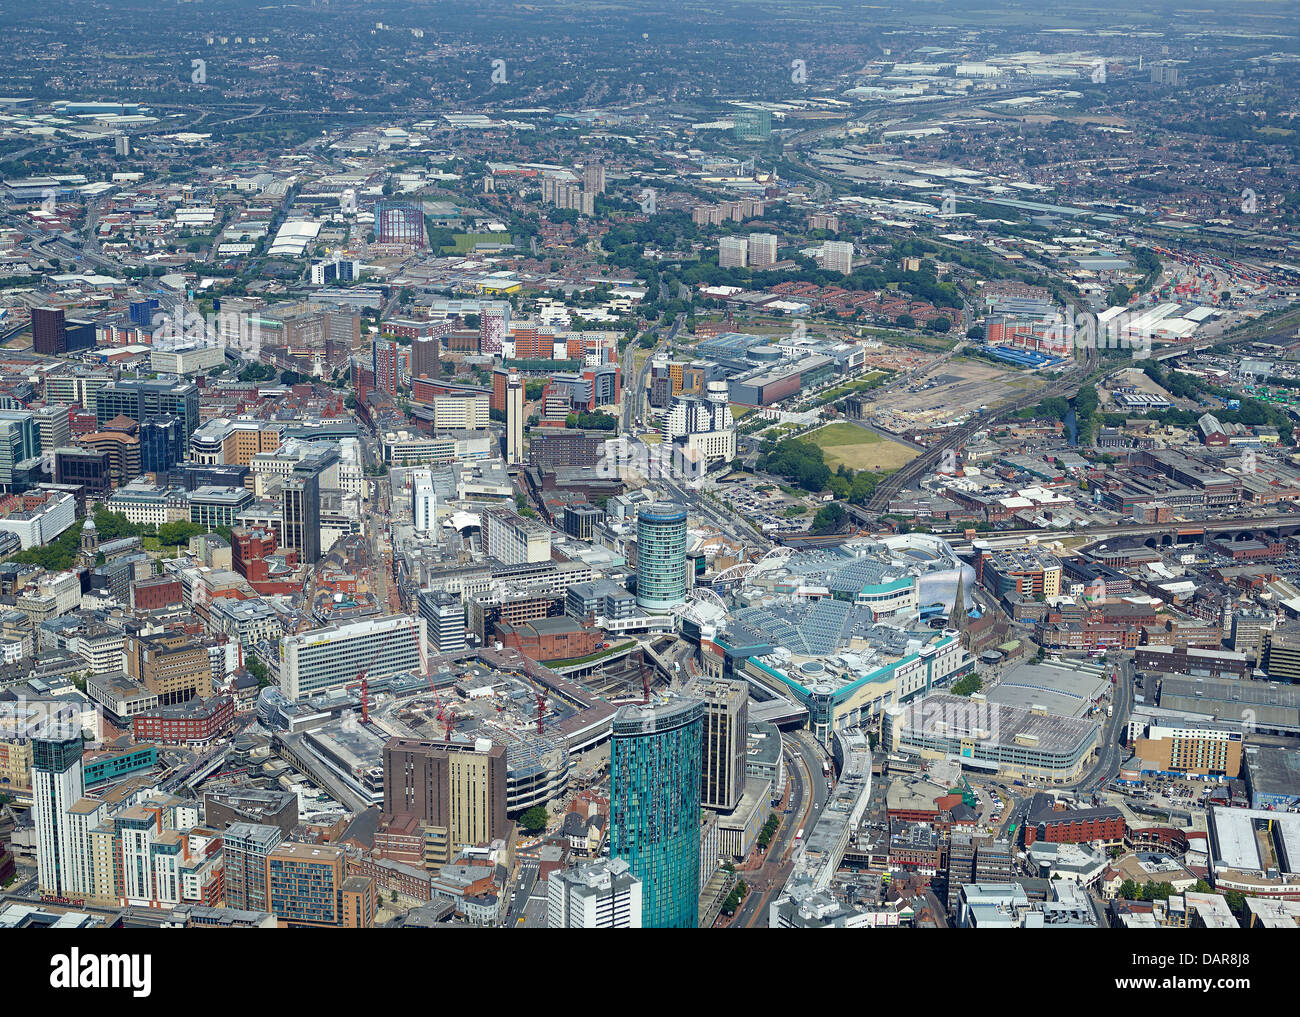 El centro de la ciudad de Birmingham desde el aire, West Midlands, Reino Unido Foto de stock